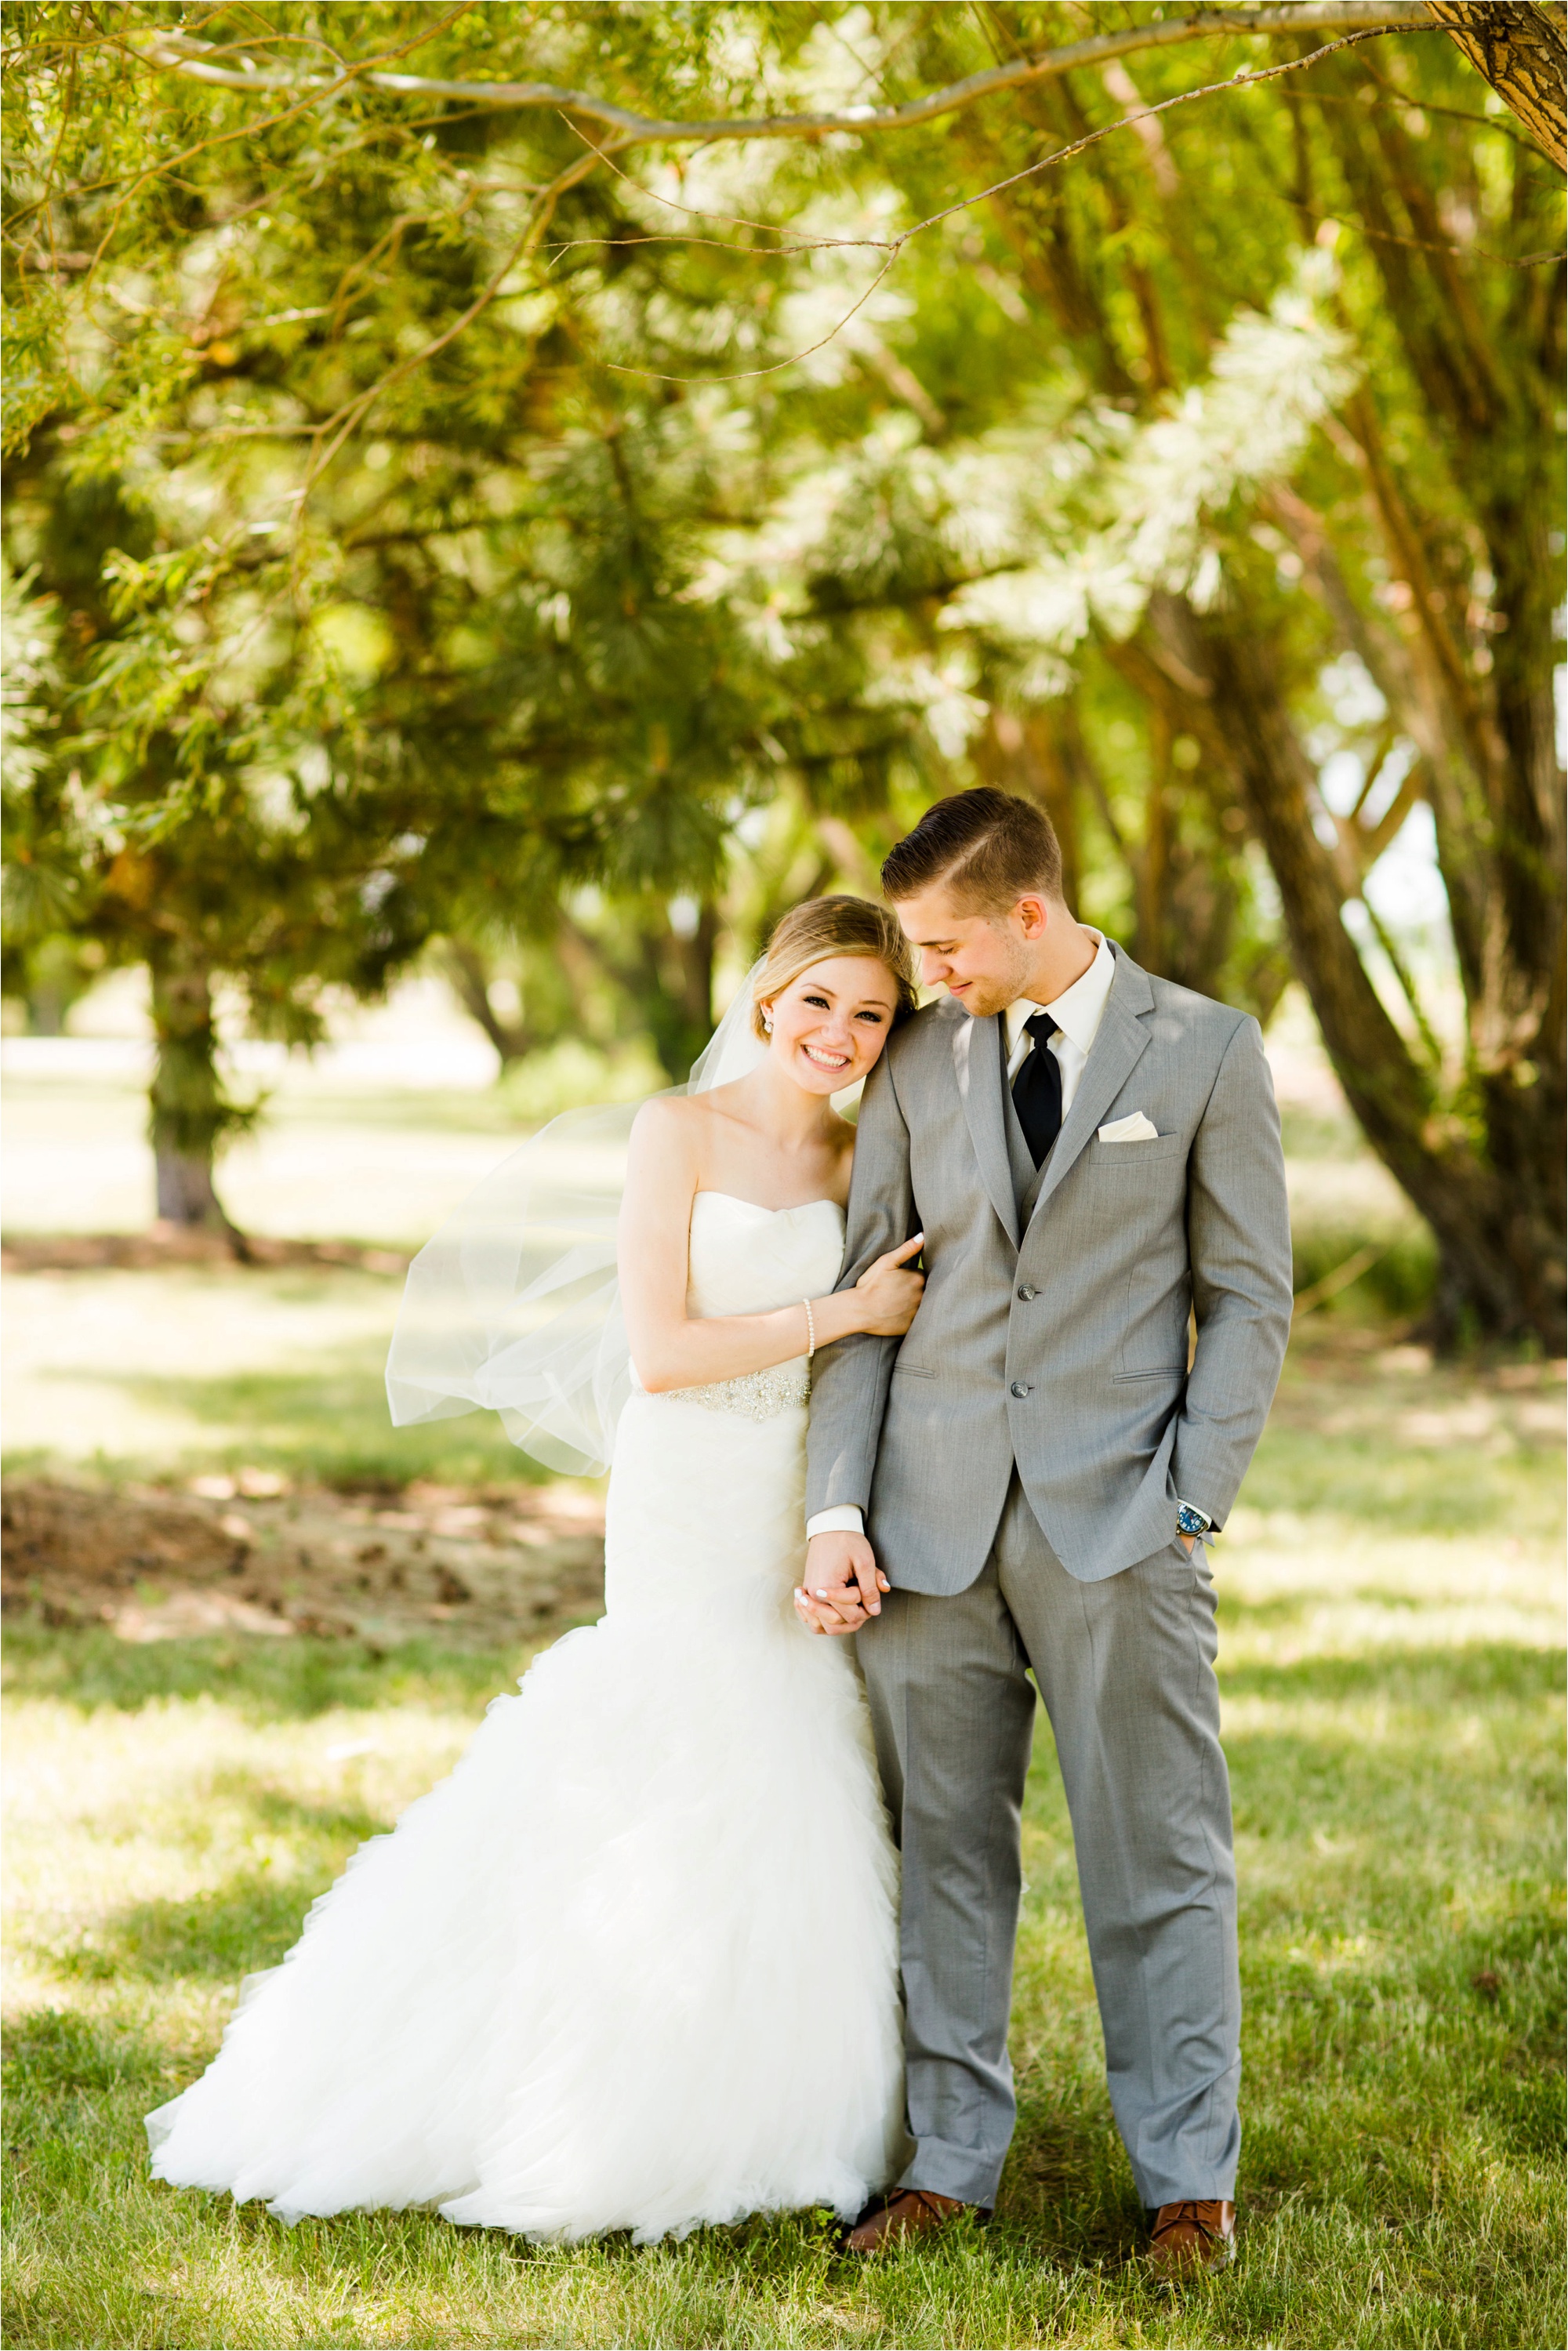 Caitlin and Luke Photography, Bloomington Normal Wedding Photographers, Illinois Wedding Photographers, Illinois Husband and Wife Wedding Photography Team_0286.jpg